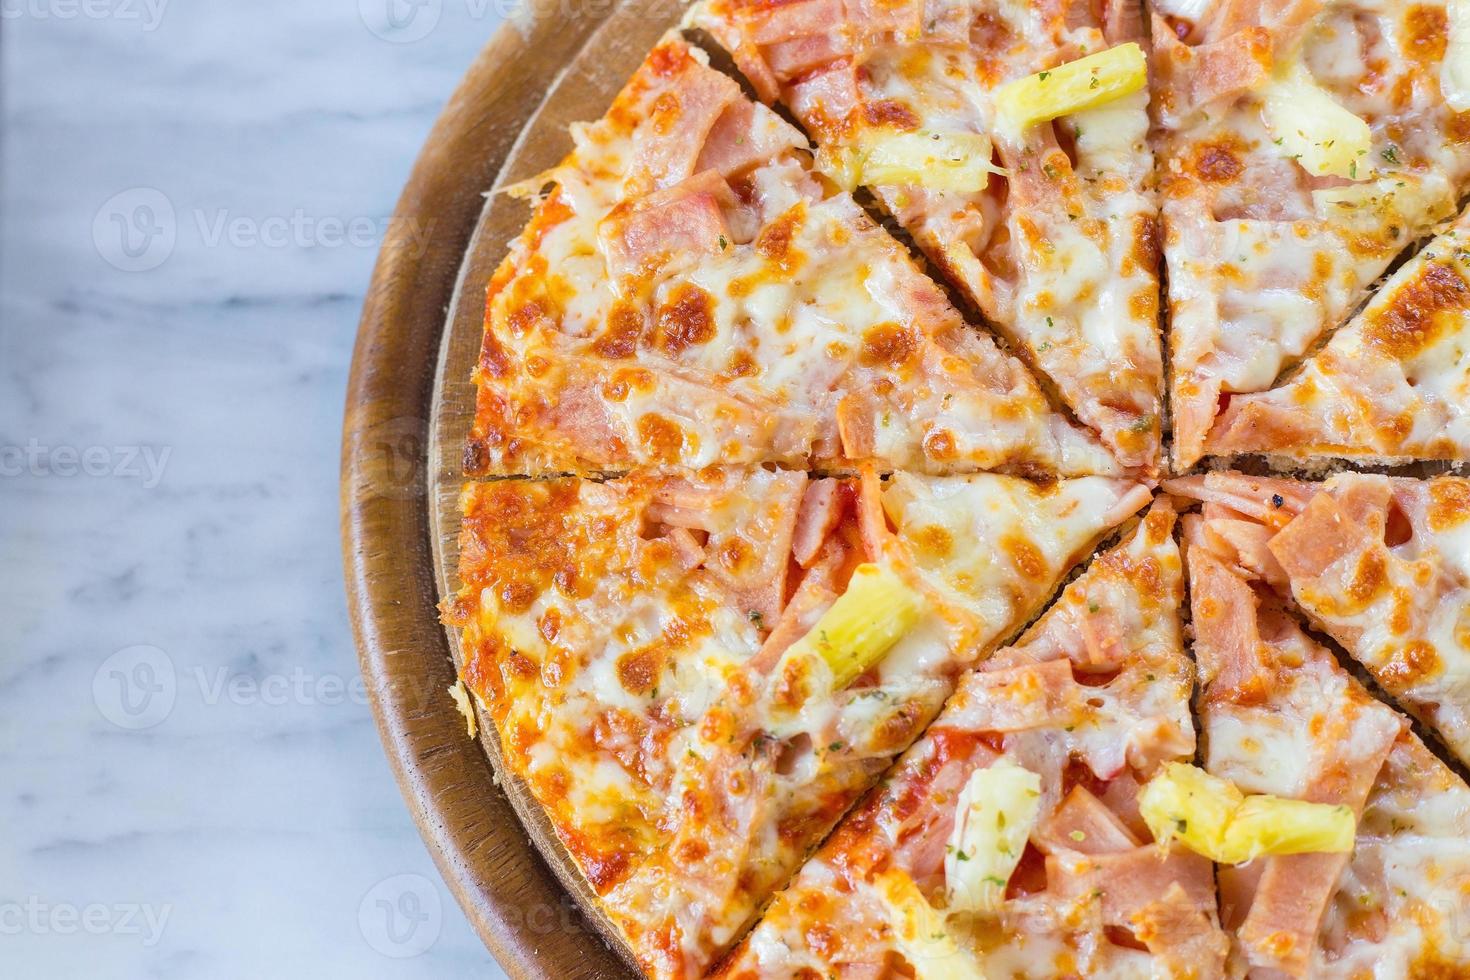 La pizza hawaiana es una comida italiana que se prepara con salsa de tomate, piña picada, jamón y queso. foto